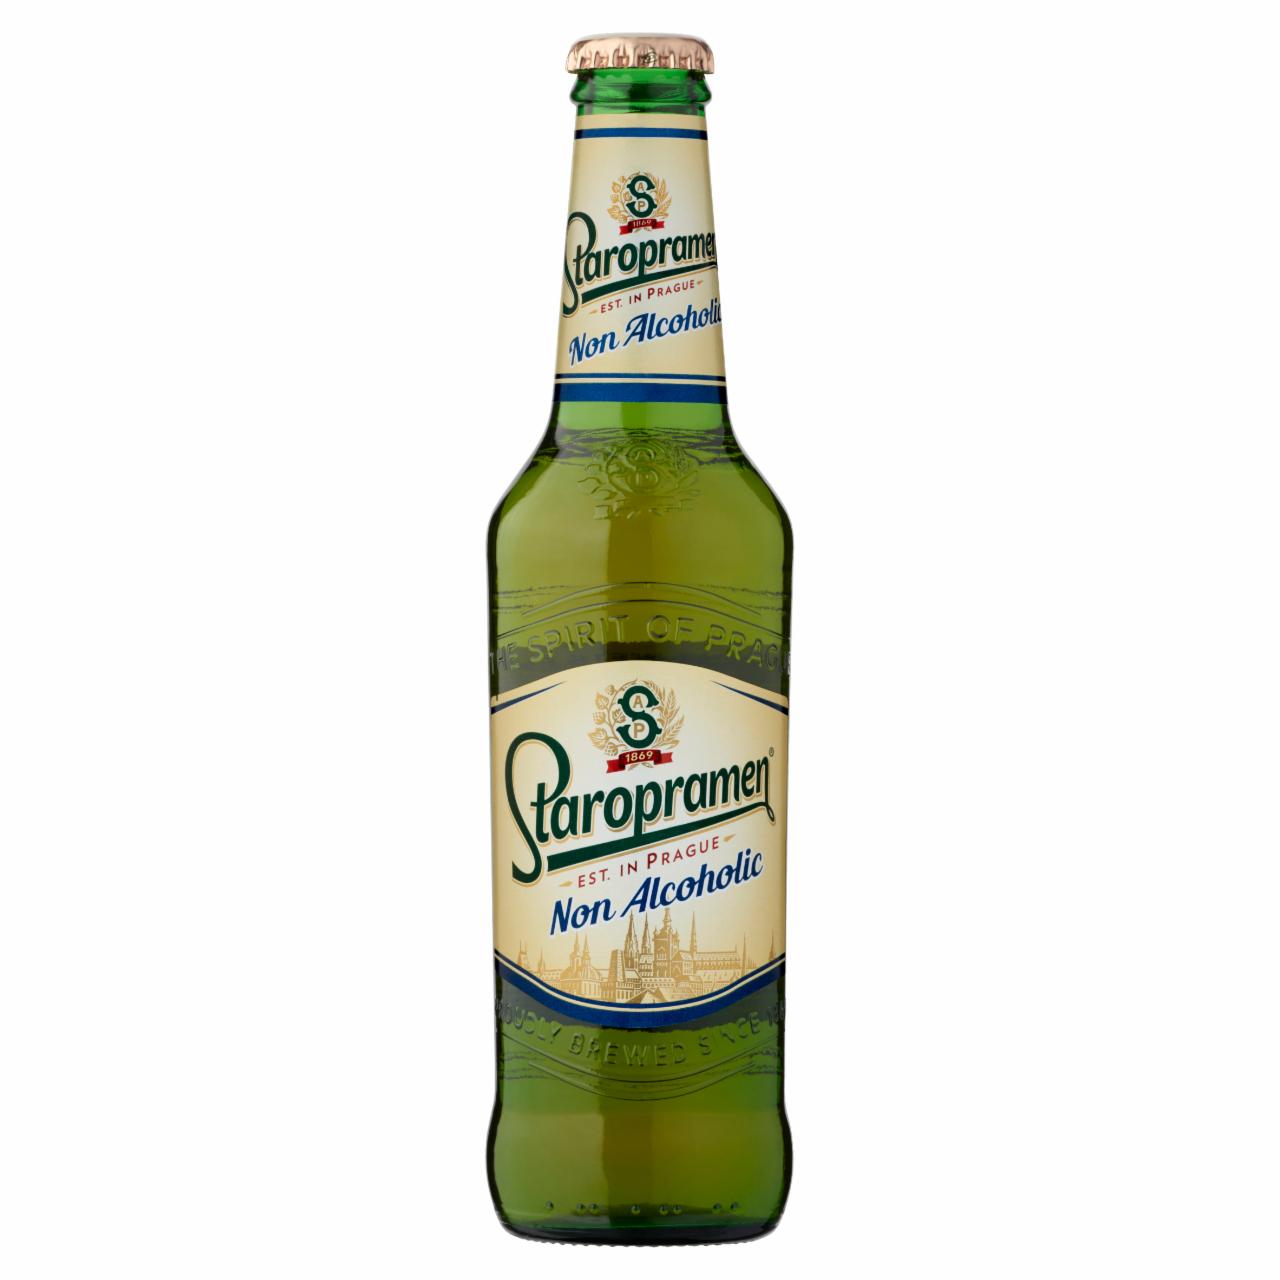 Képek - Staropramen alkoholmentes világos sör 0,5% 0,33 l